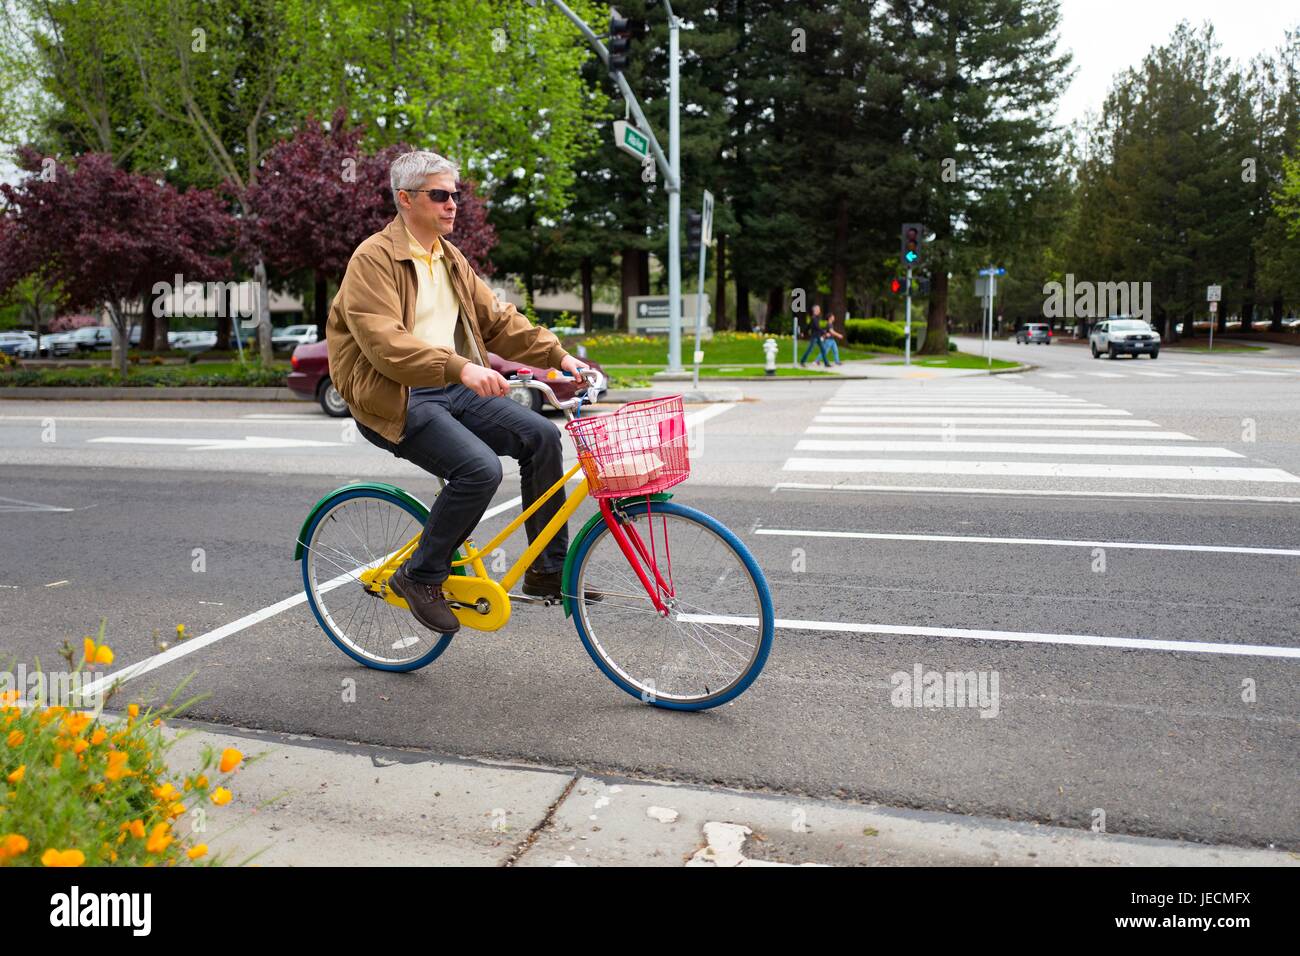 Un homme d'âge moyen, employé de Google Inc monte un vélo Google colorés sur une route au Googleplex, le siège de Google Inc dans la Silicon Valley ville de Mountain View, Californie, le 7 avril 2017. Banque D'Images